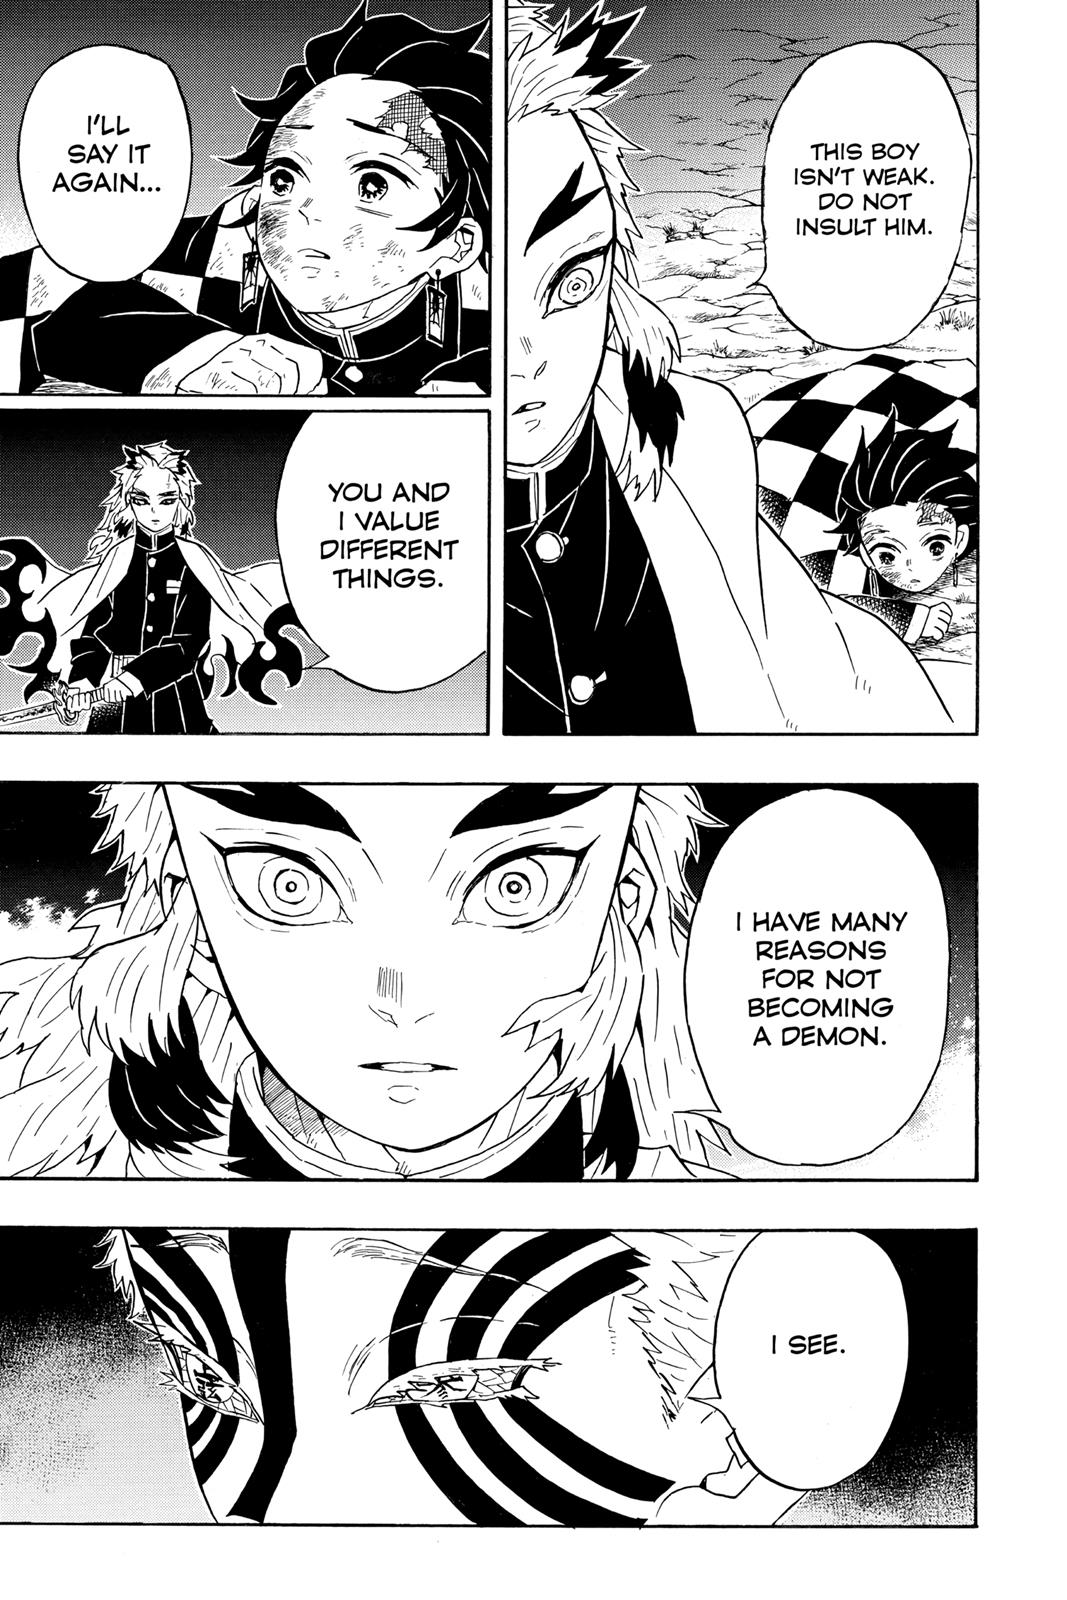 Demon Slayer Manga Manga Chapter - 63 - image 11